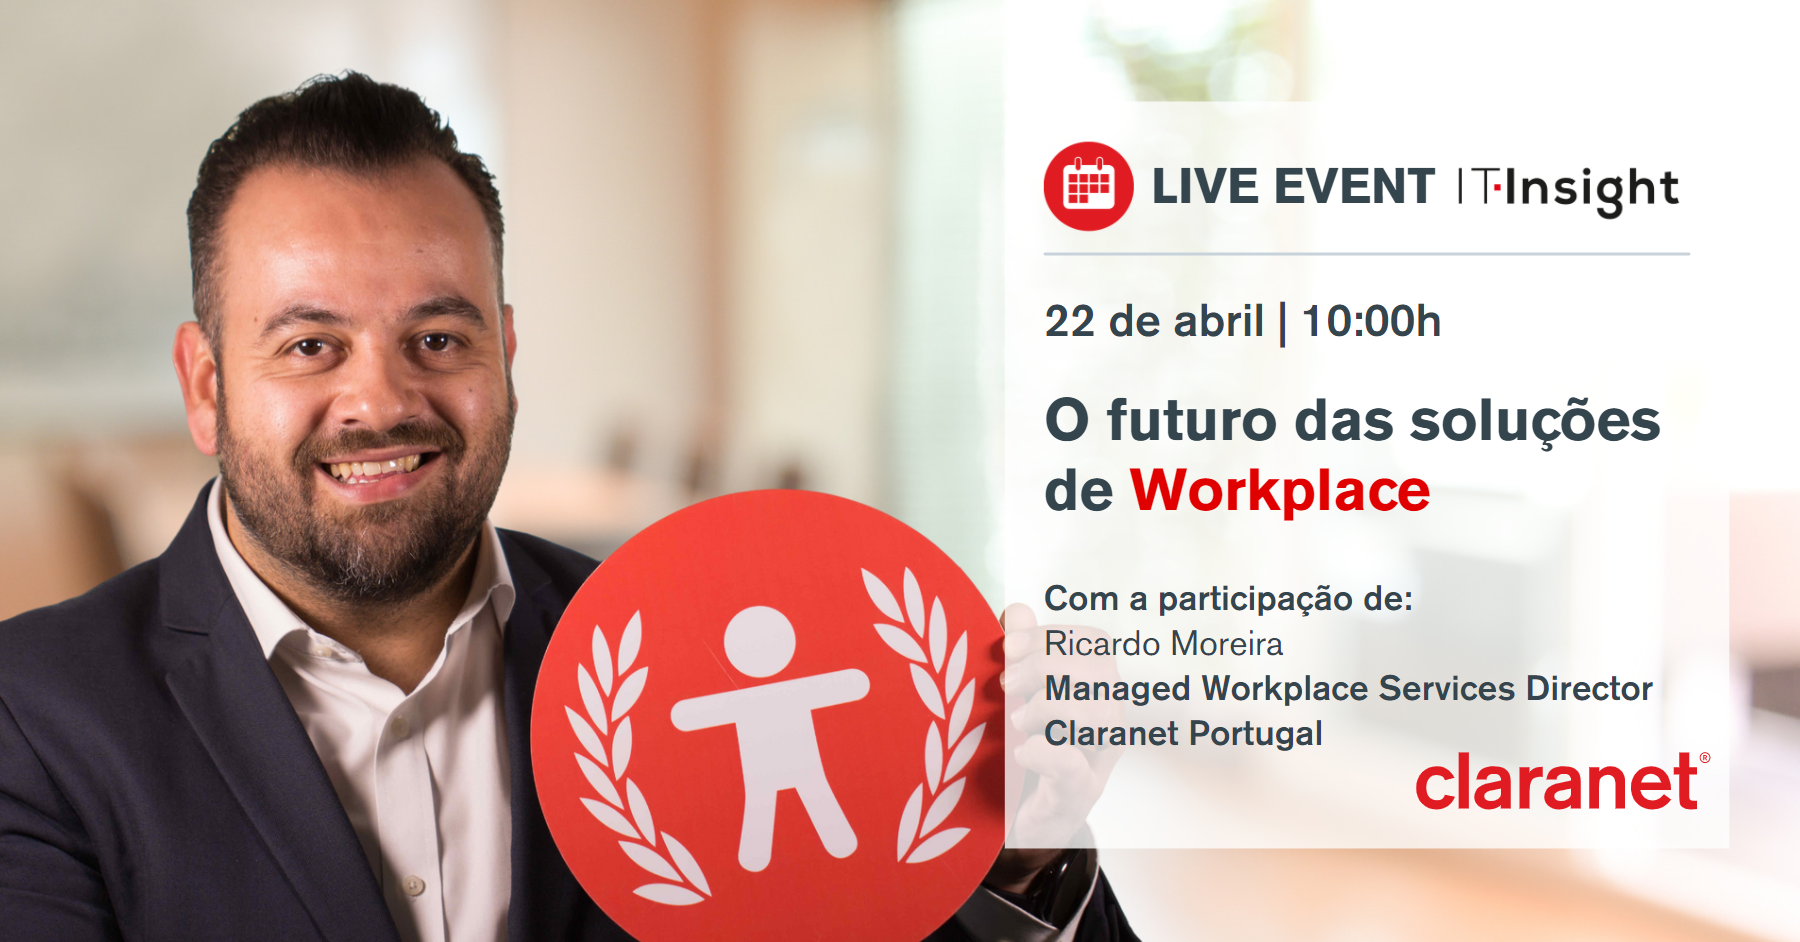 Claranet - Live Event IT Insight | O futuro das soluções de Workplace